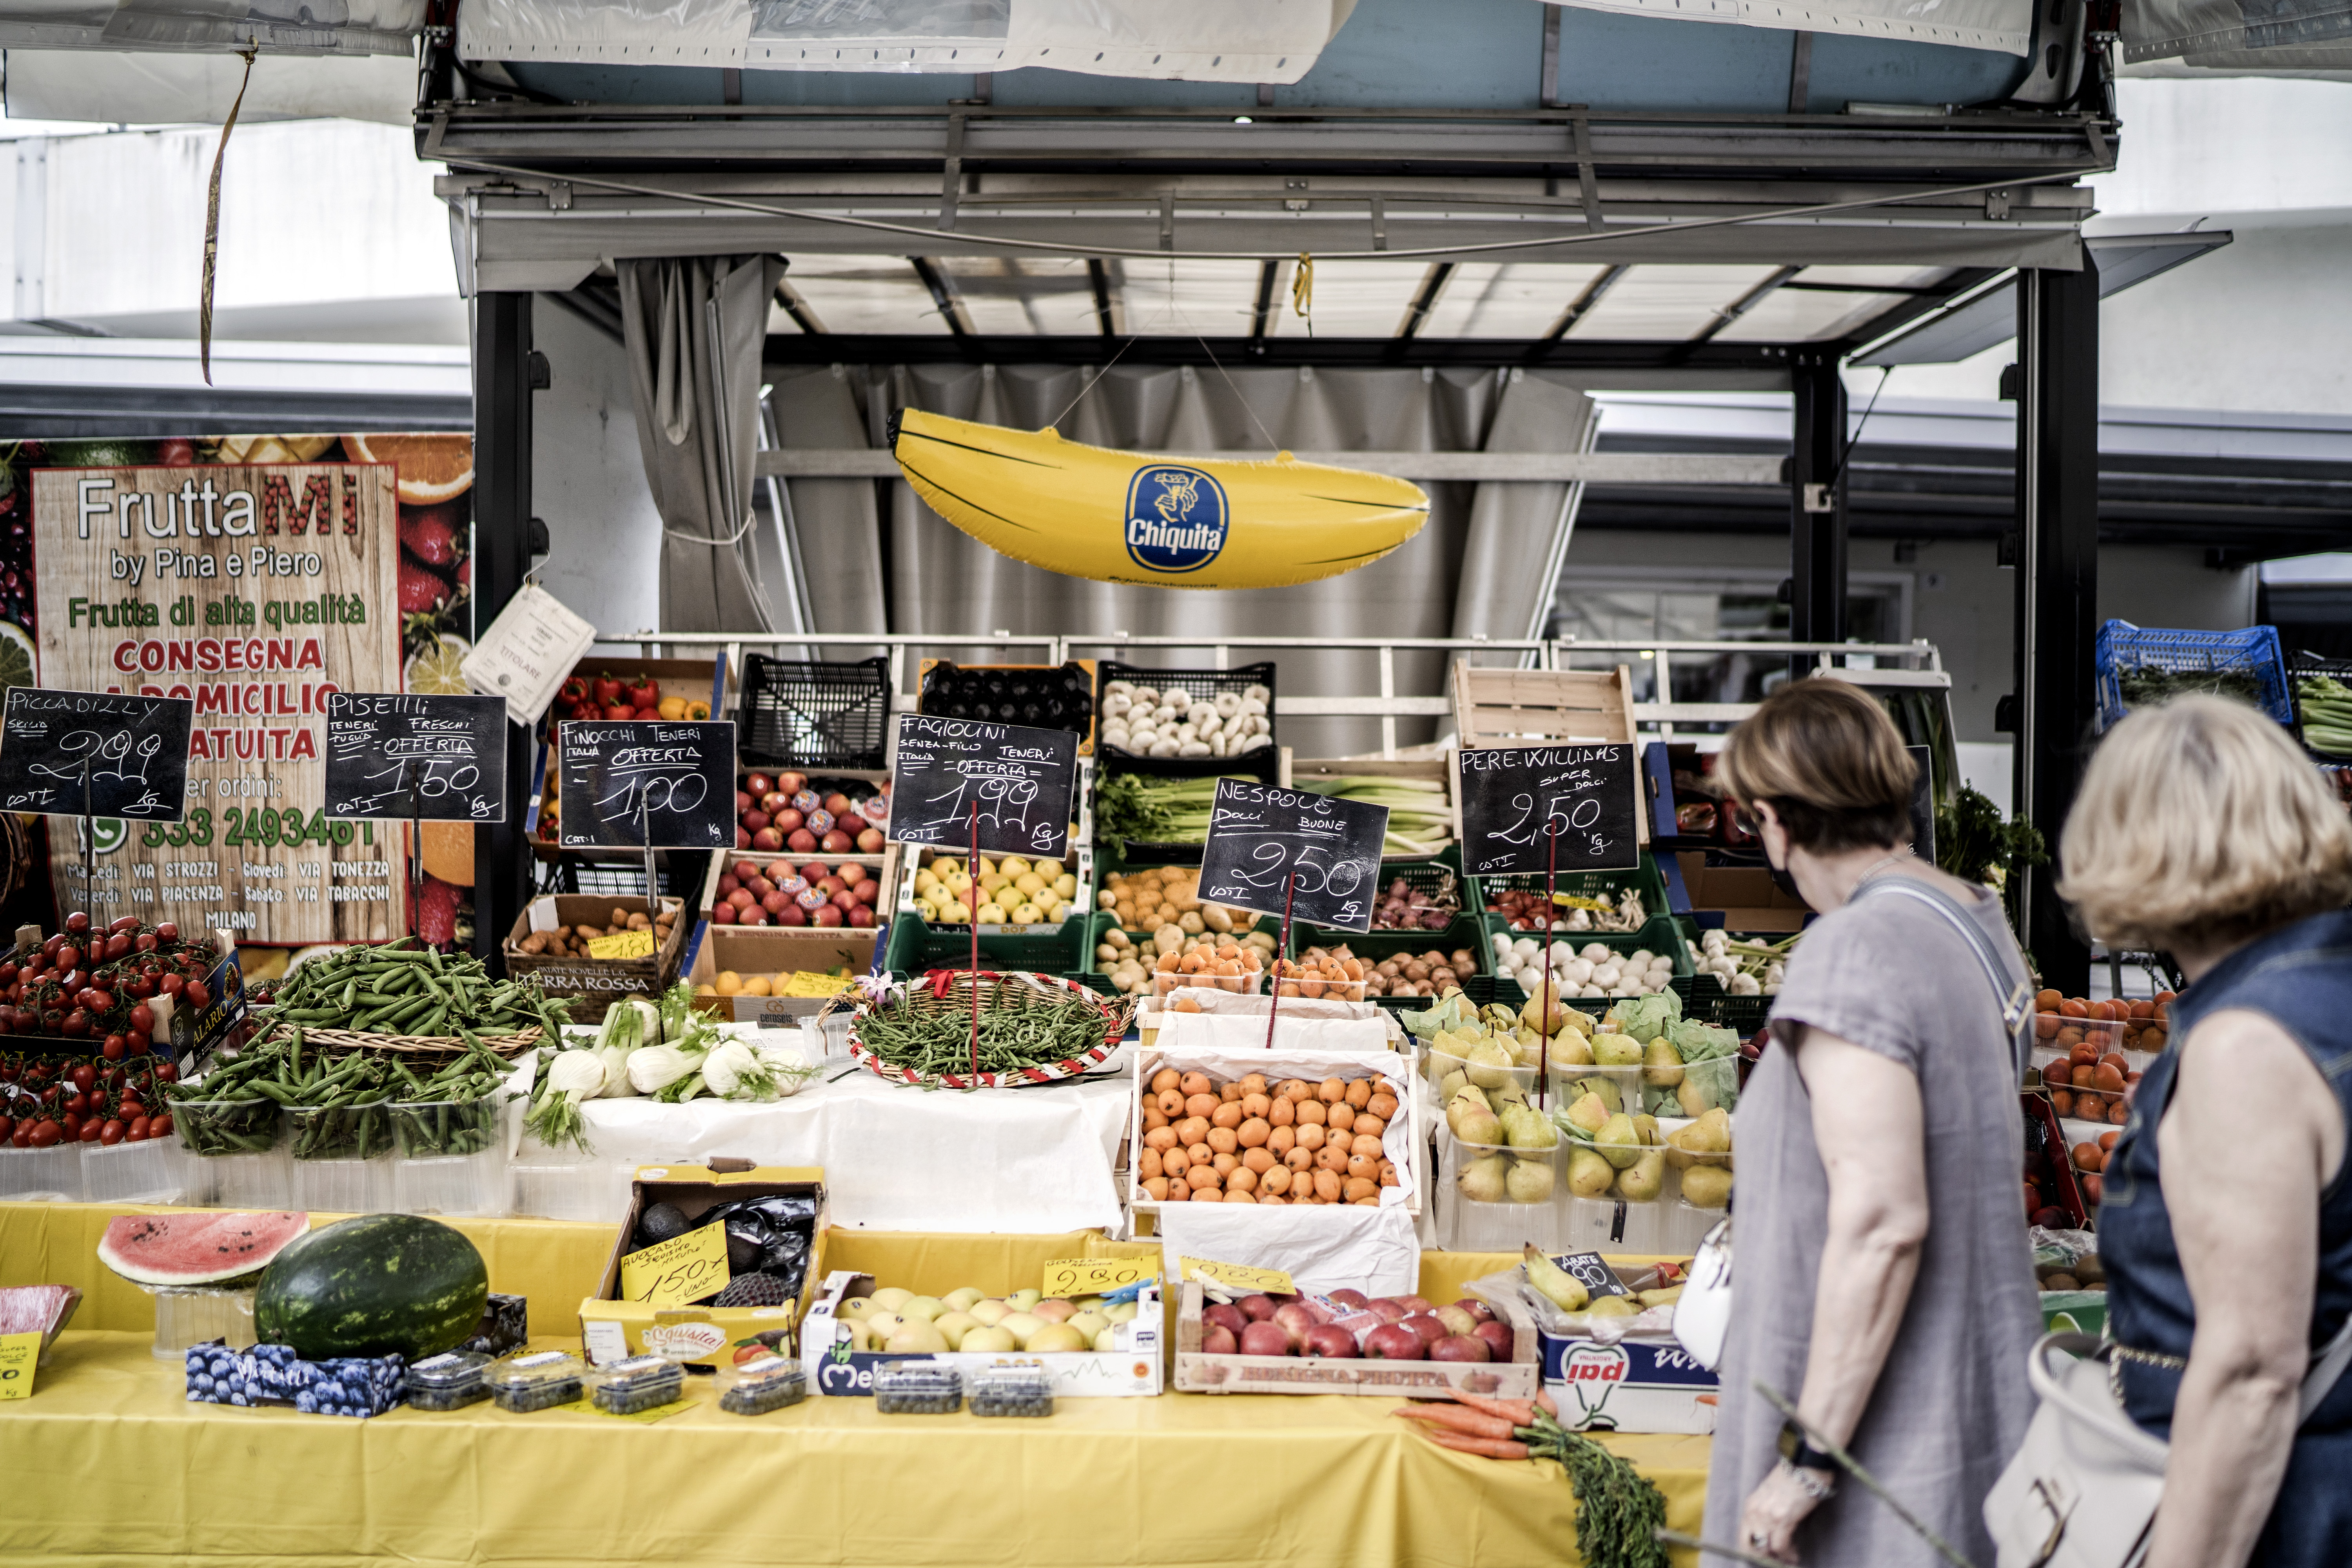 Gente en un mercado de Milán, Italia, el 24 de mayo de 2022 (Foto Prensa Libre: Alessandro Grassani/The New York Times)